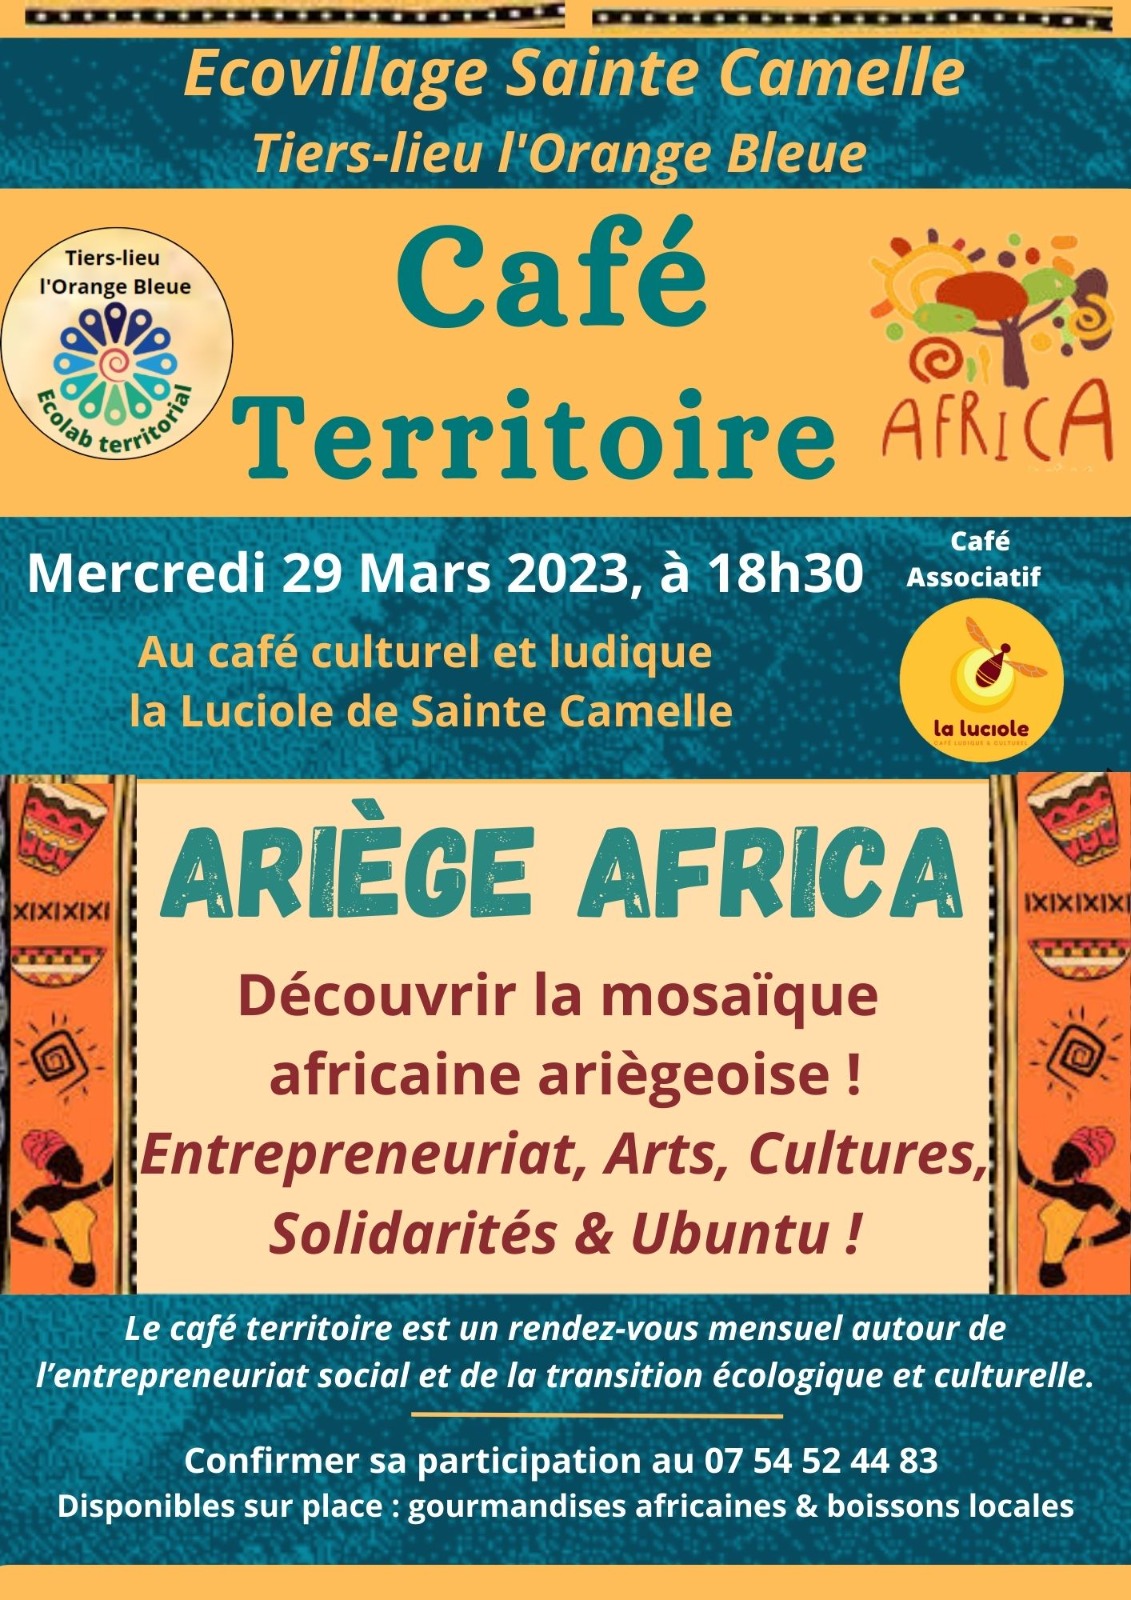 Cafe Territoire Africa mars 2023